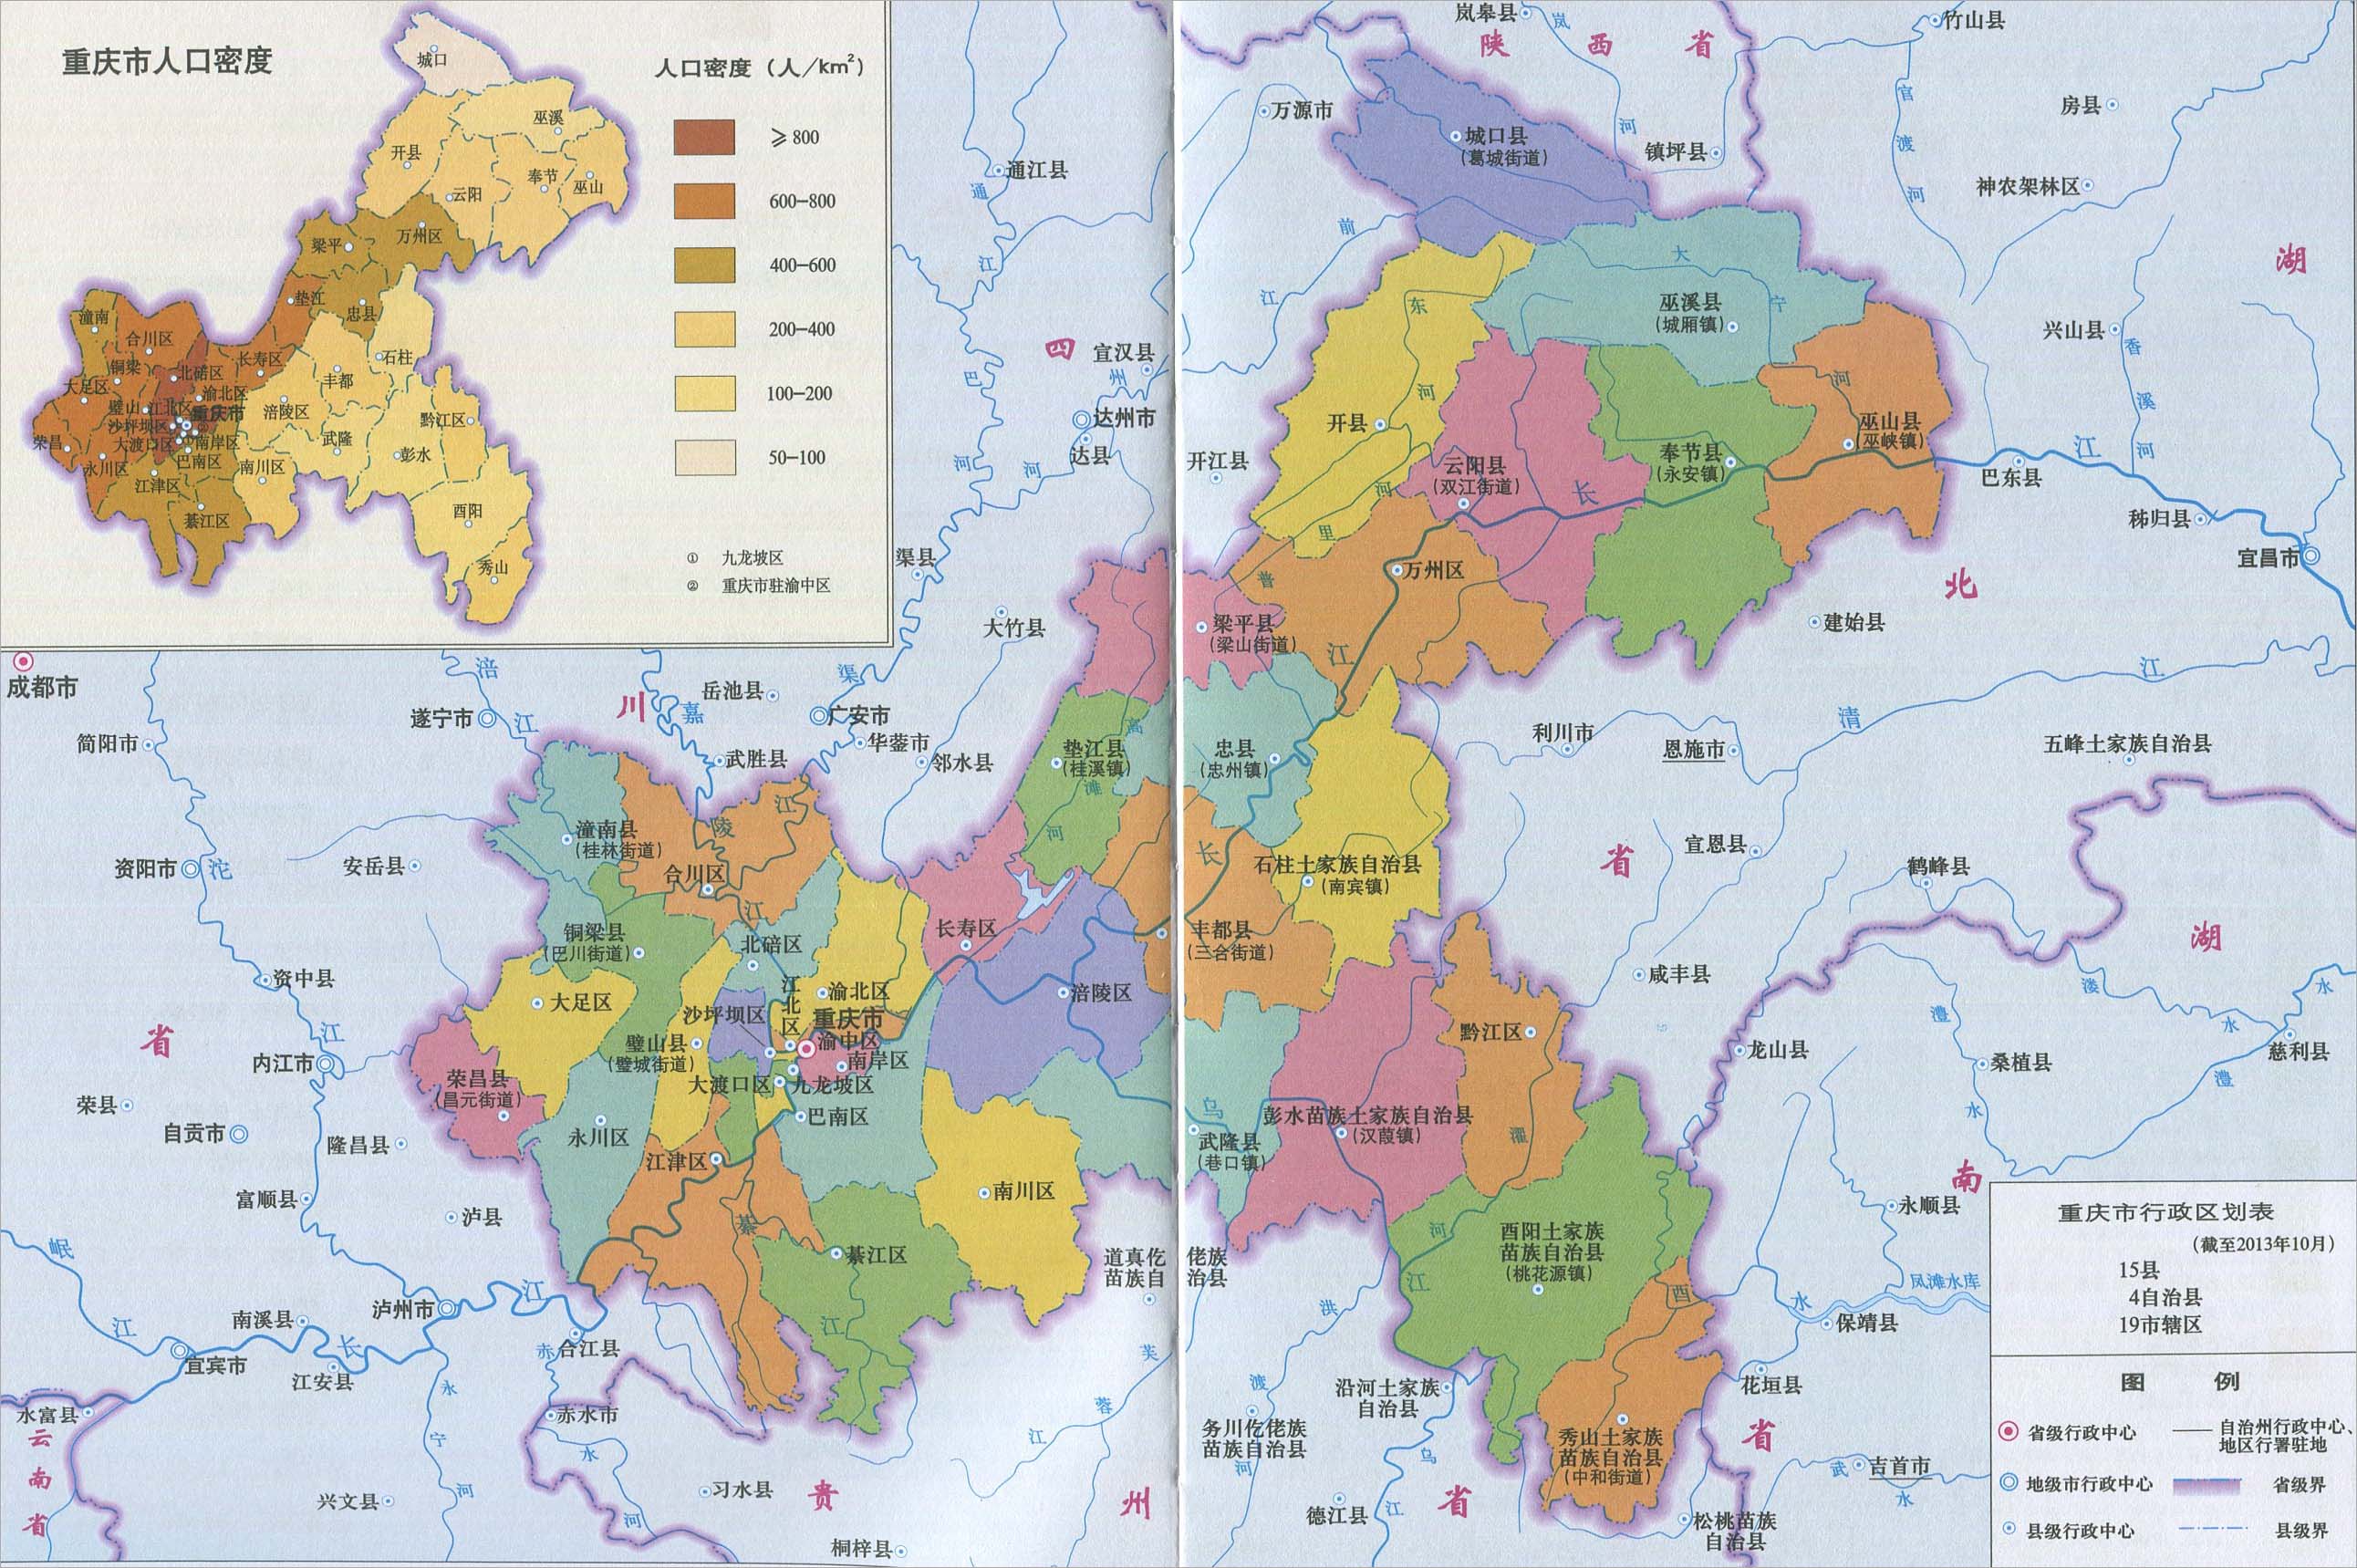 两江新区范围包括江北区,渝北区,北碚区3个行政区部分区域.图片